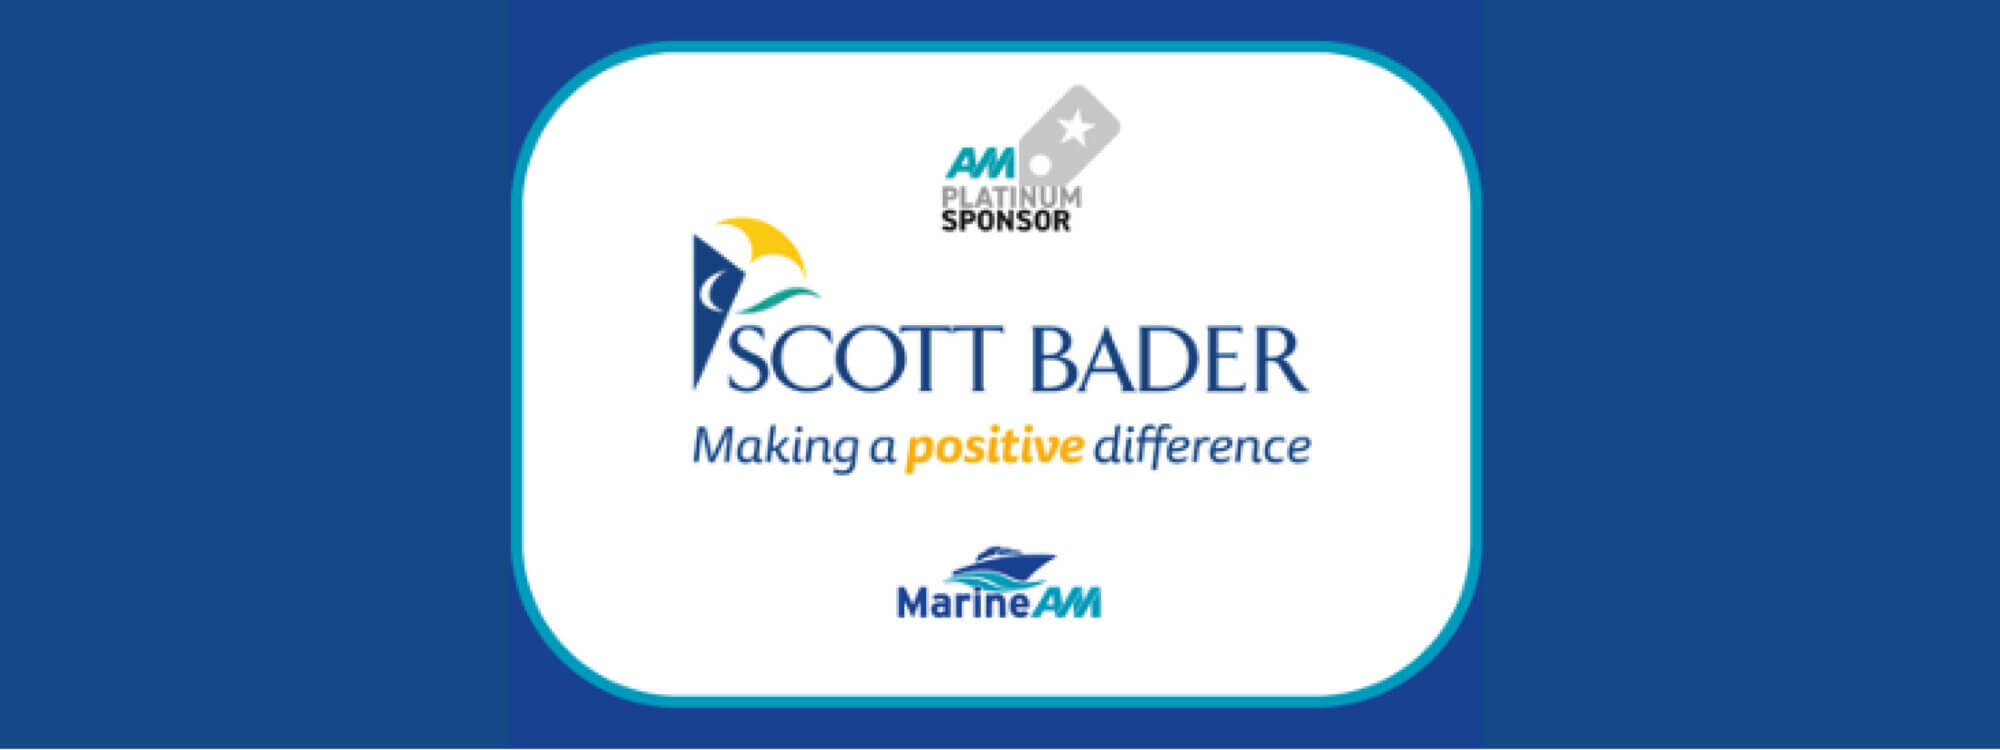 Scott Bader announced as platinum sponsor for MarineAM